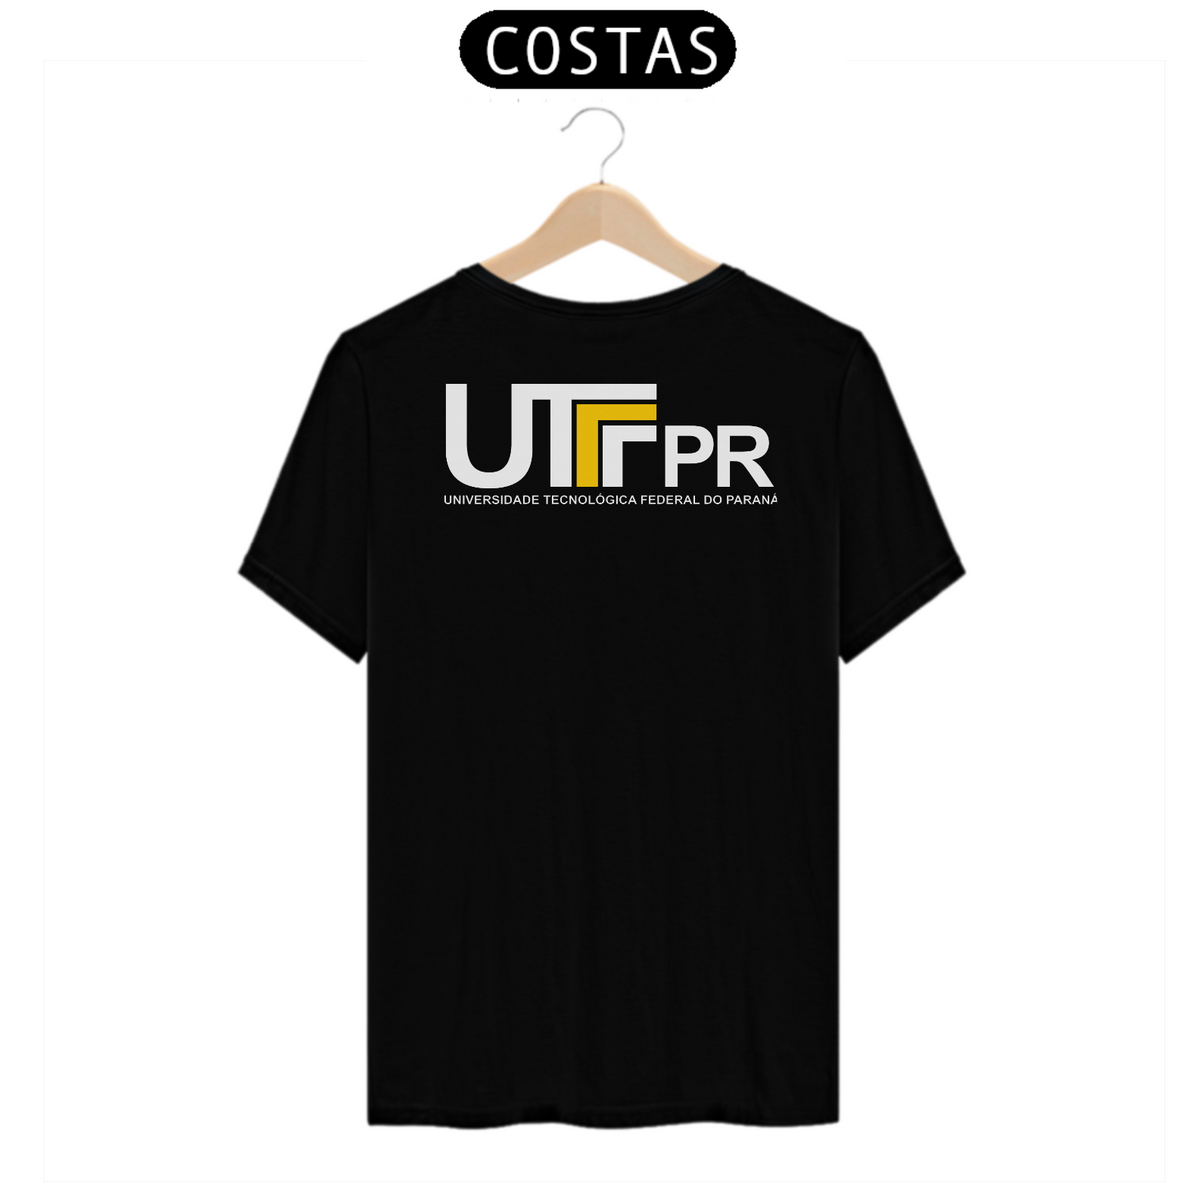 Nome do produto: Camiseta [UTFPR] {cores diversas escuras} - costas